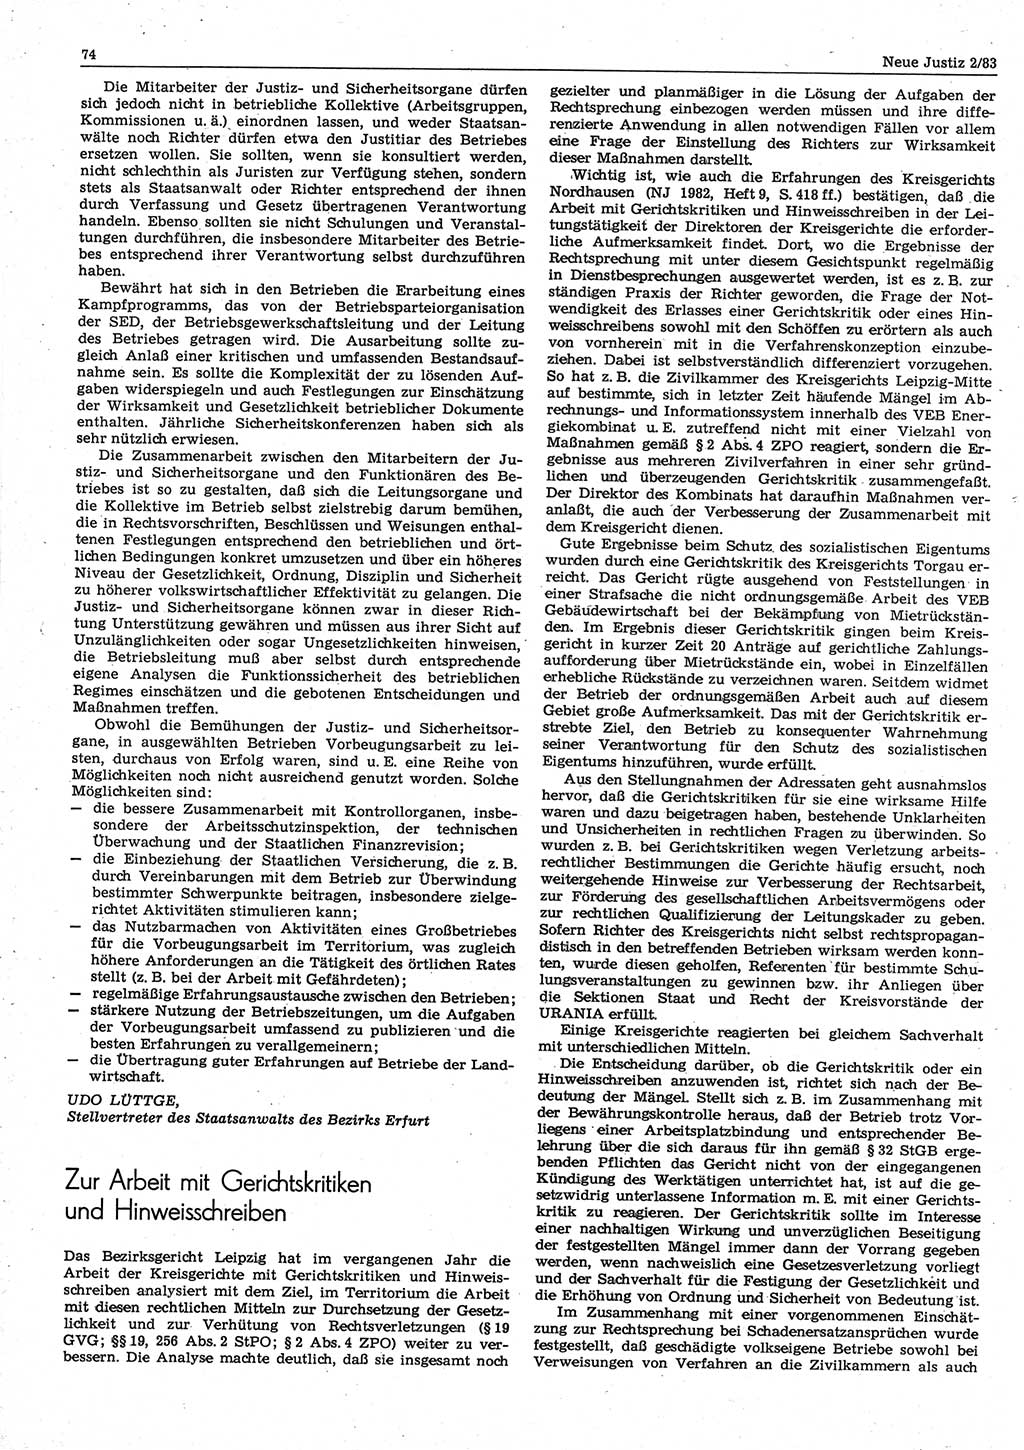 Neue Justiz (NJ), Zeitschrift für sozialistisches Recht und Gesetzlichkeit [Deutsche Demokratische Republik (DDR)], 37. Jahrgang 1983, Seite 74 (NJ DDR 1983, S. 74)